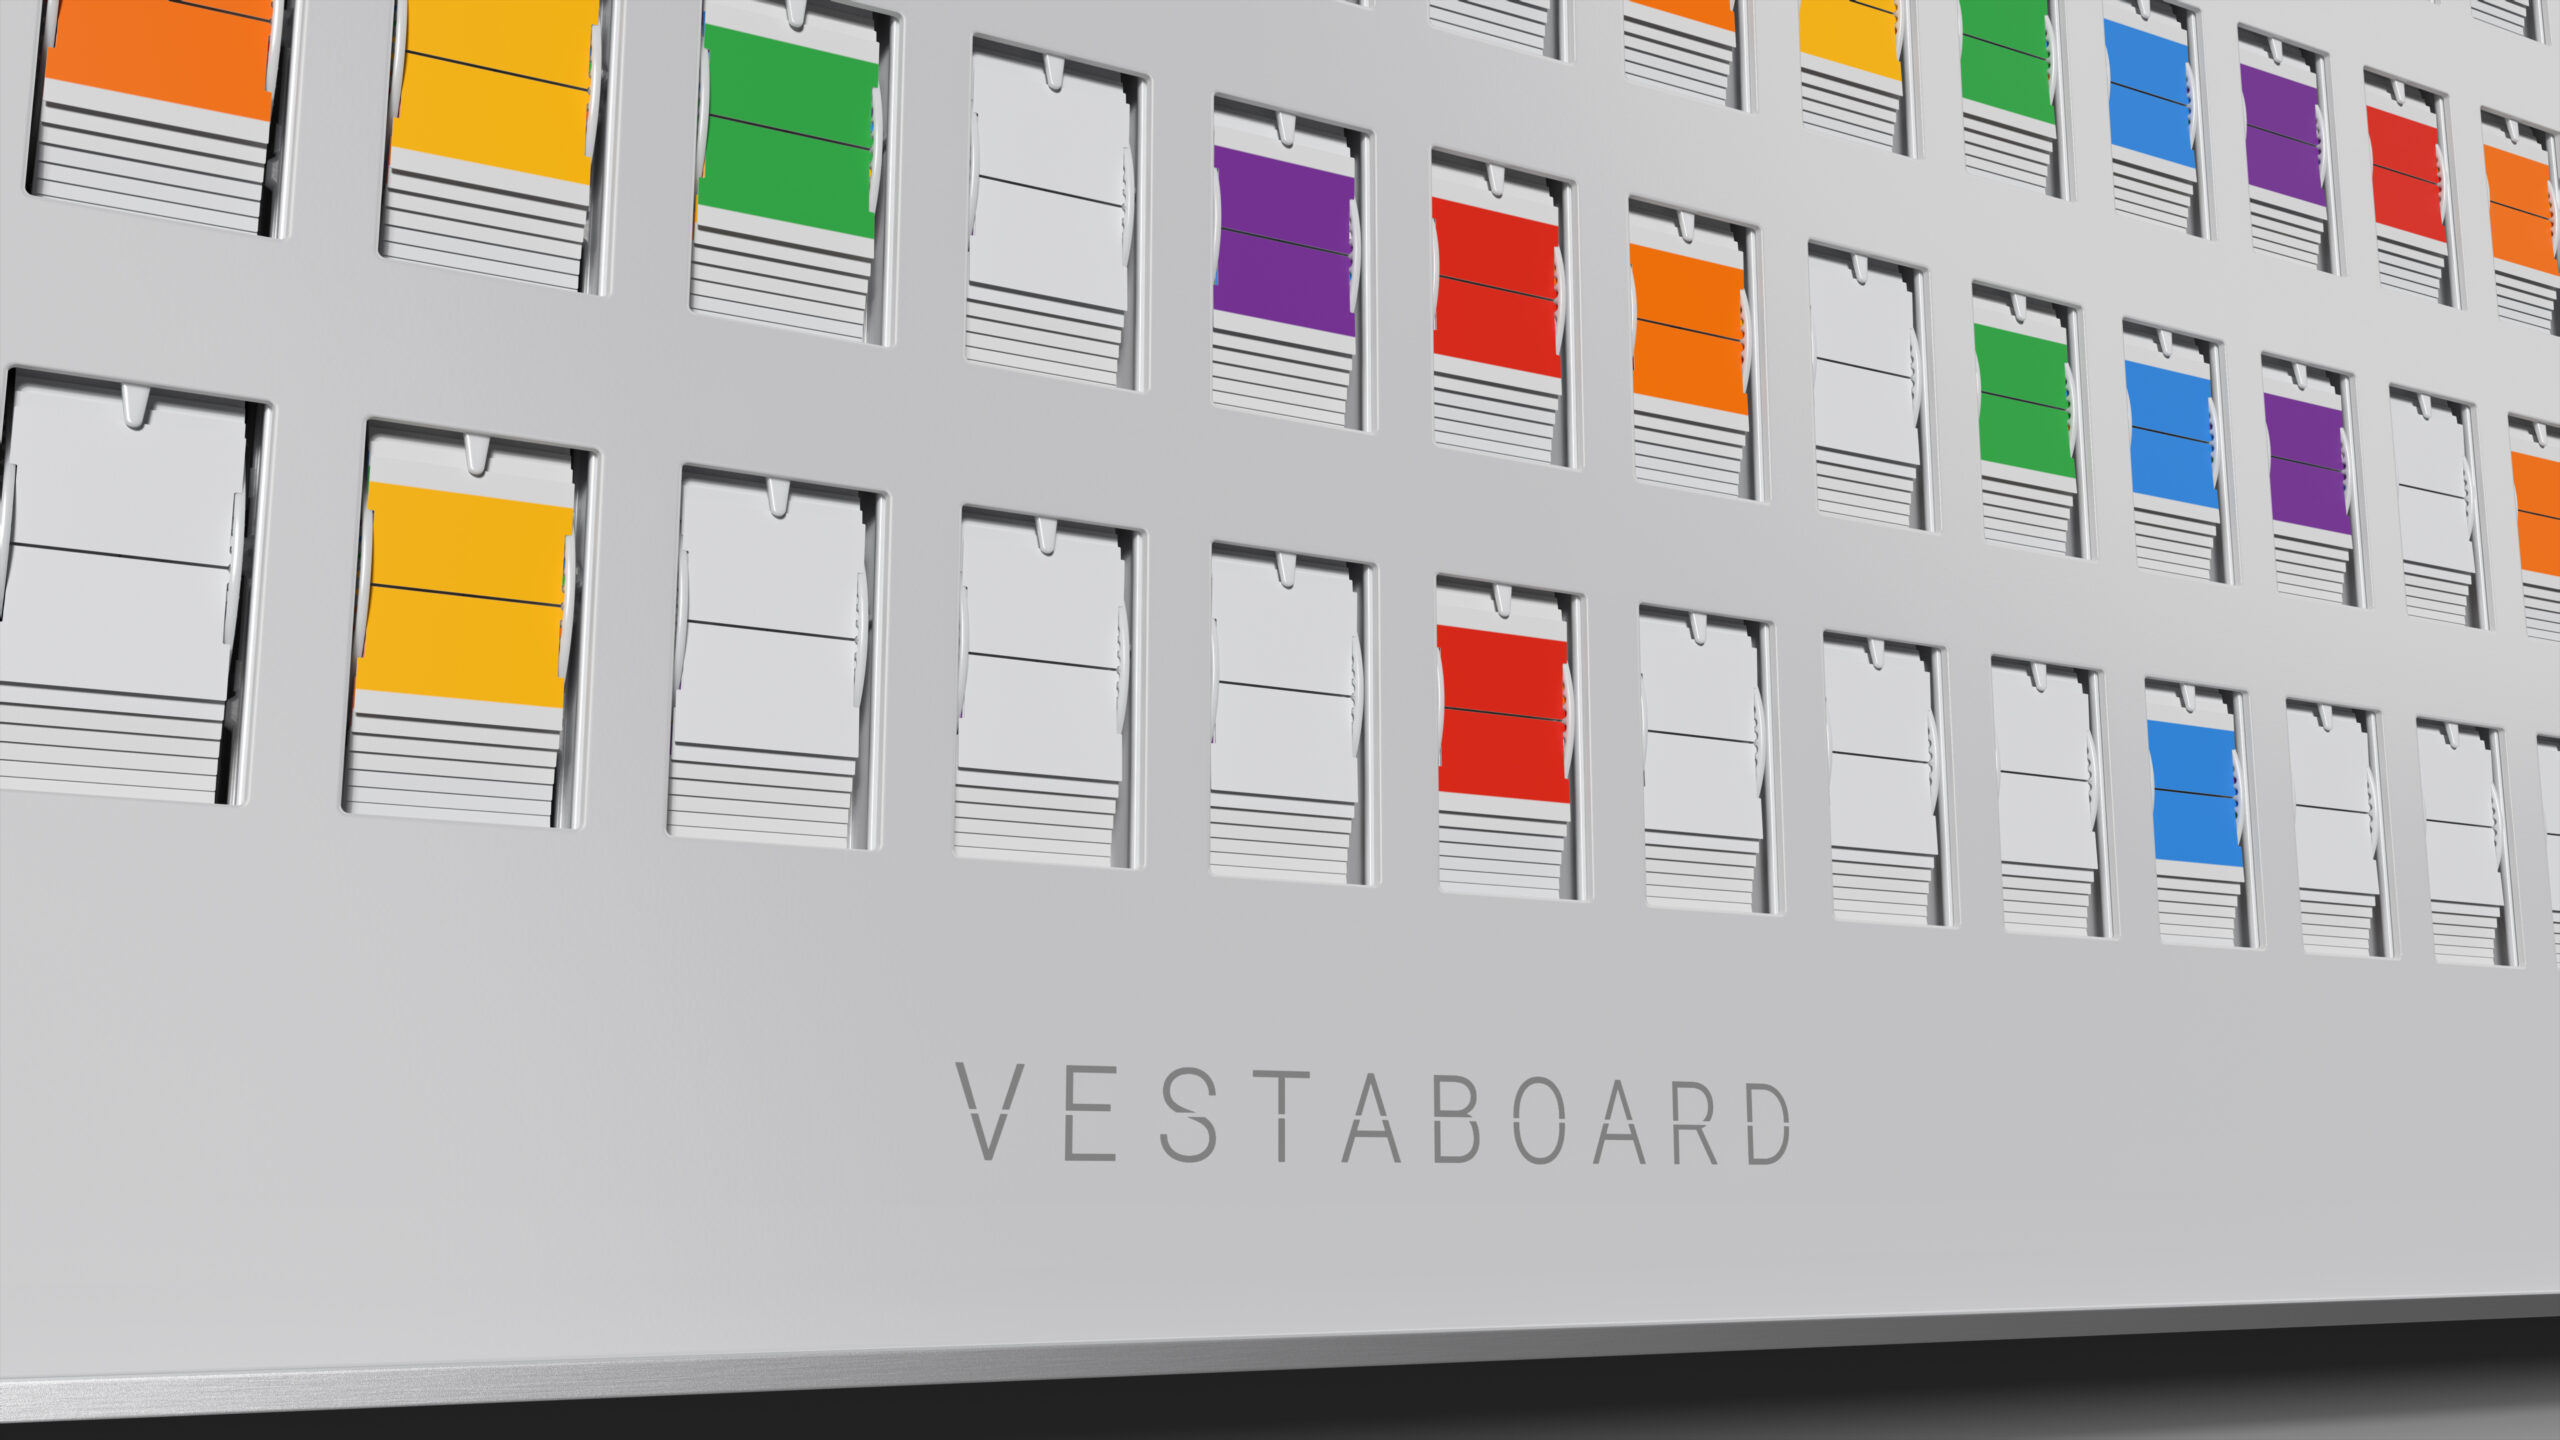 Vestaboard Smart Display